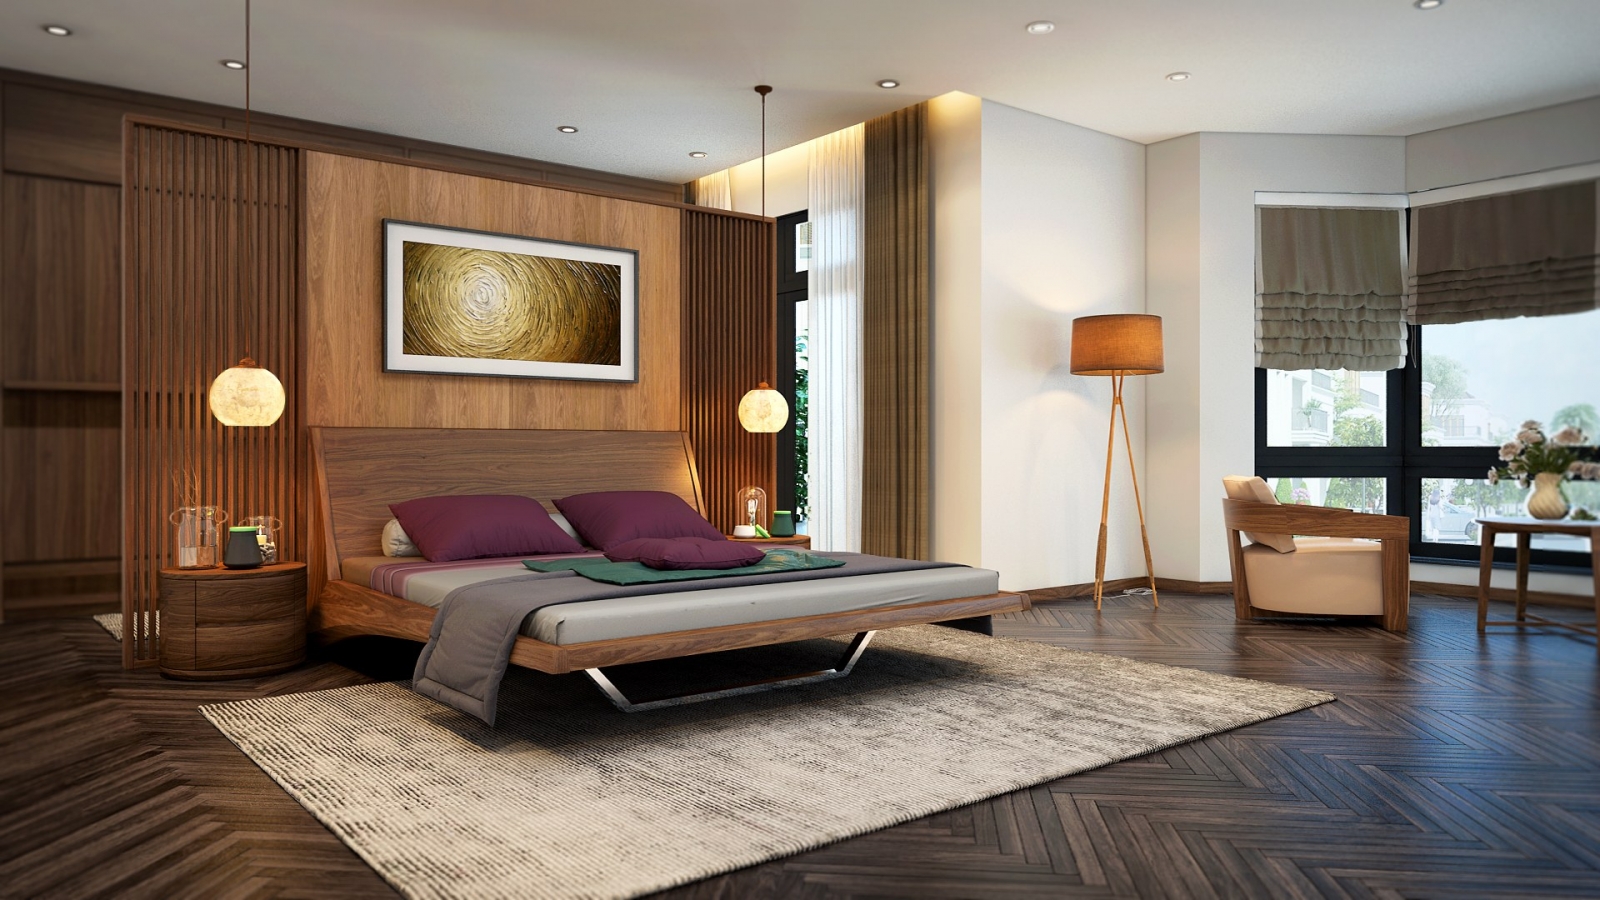 Gói dịch vụ thiết kế nội thất phòng khách nhà ở chung cư cao cấp đẹp giá rẻ tphcm